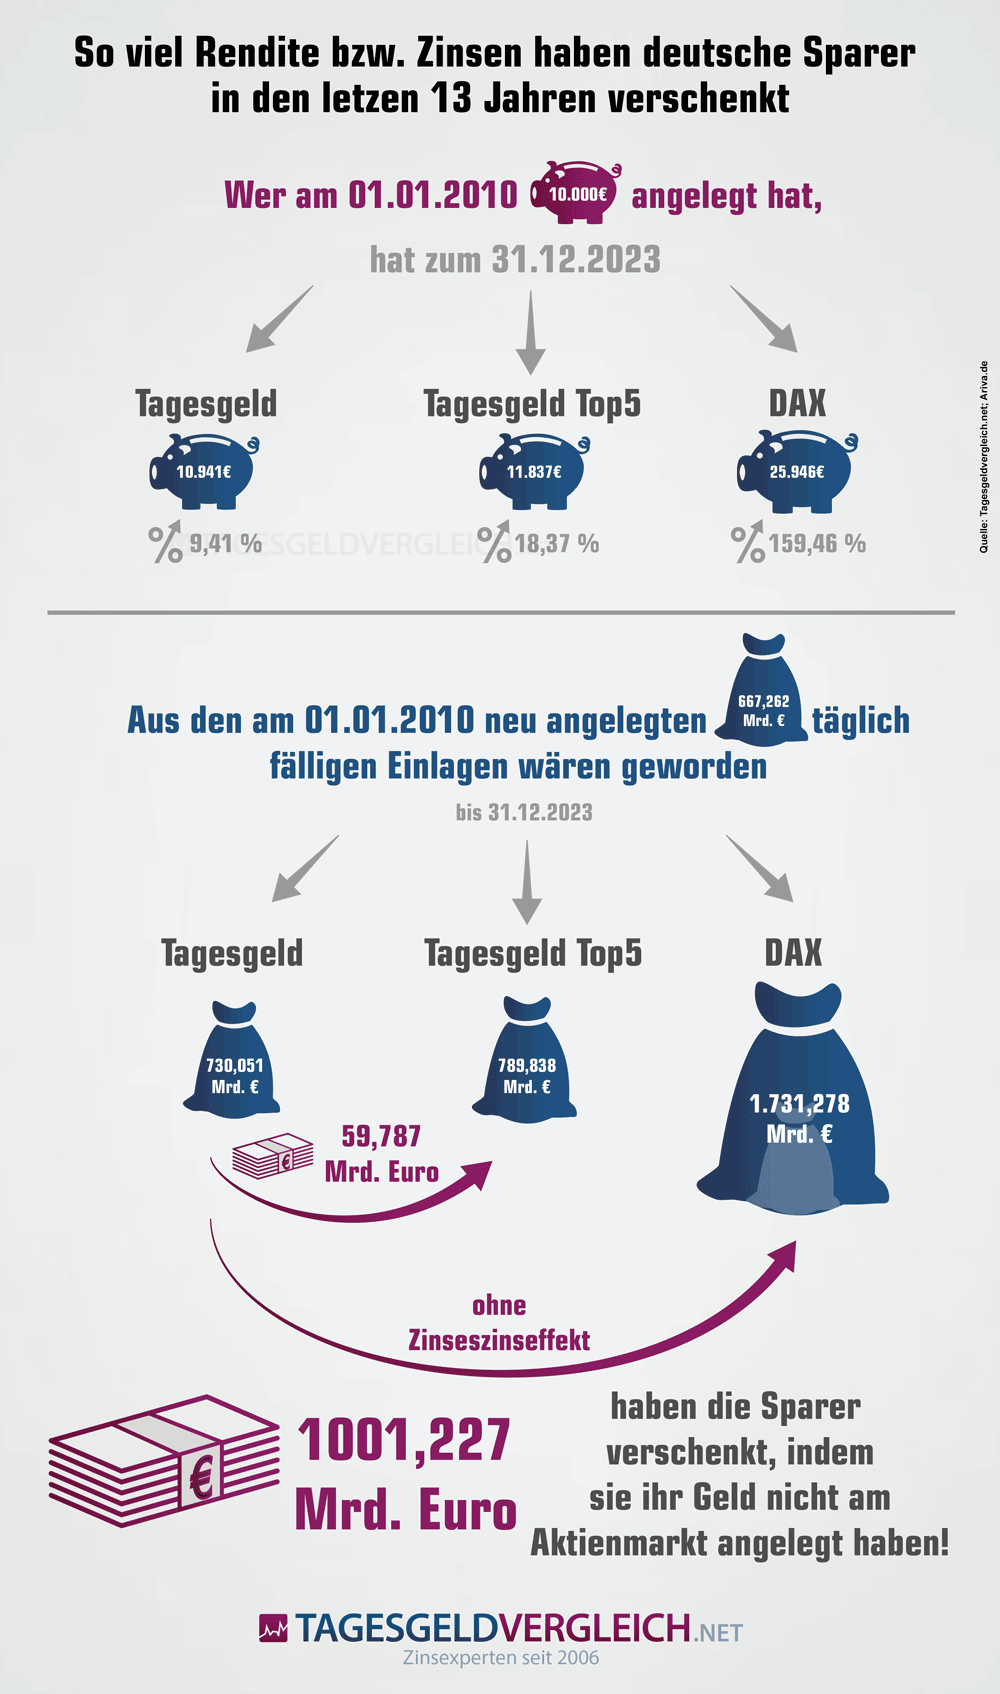 Infografik zu verschenkten Renditen und Zinsen deutscher Sparer